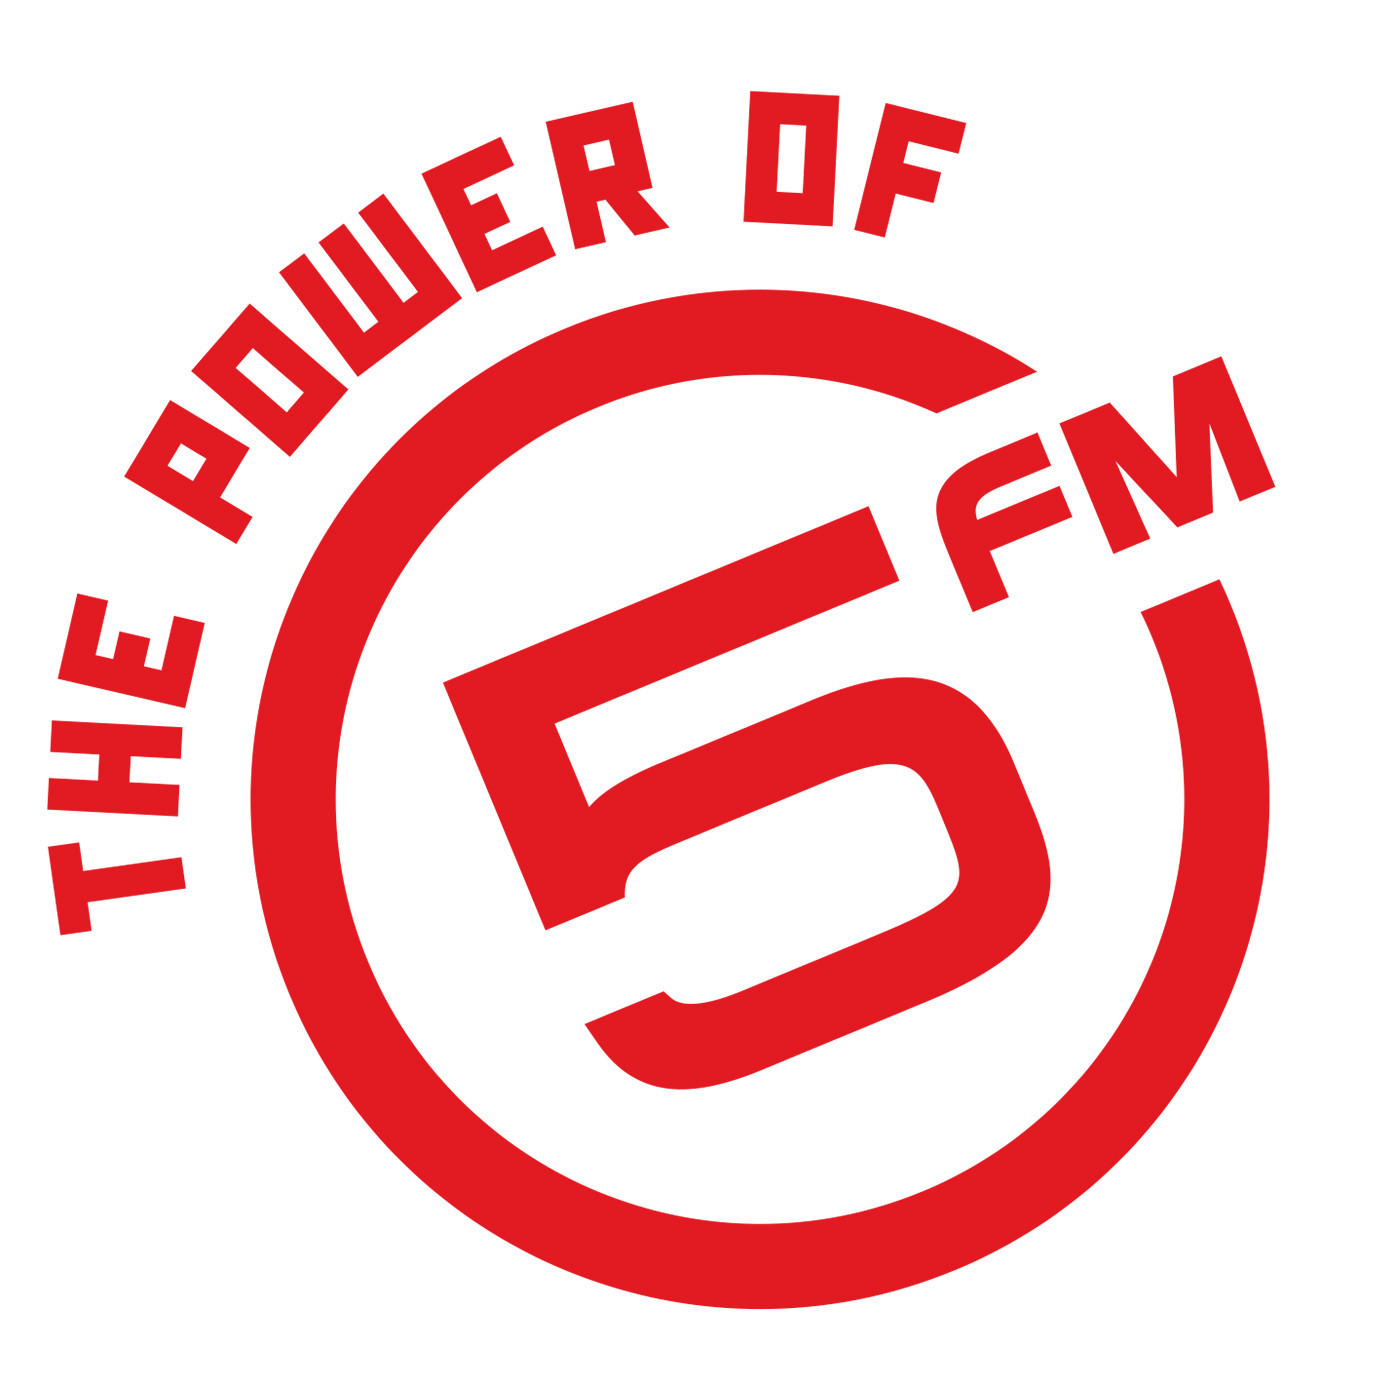 5FM LEGENDS DJ GANYANI INTERVIEW (29 JAN)